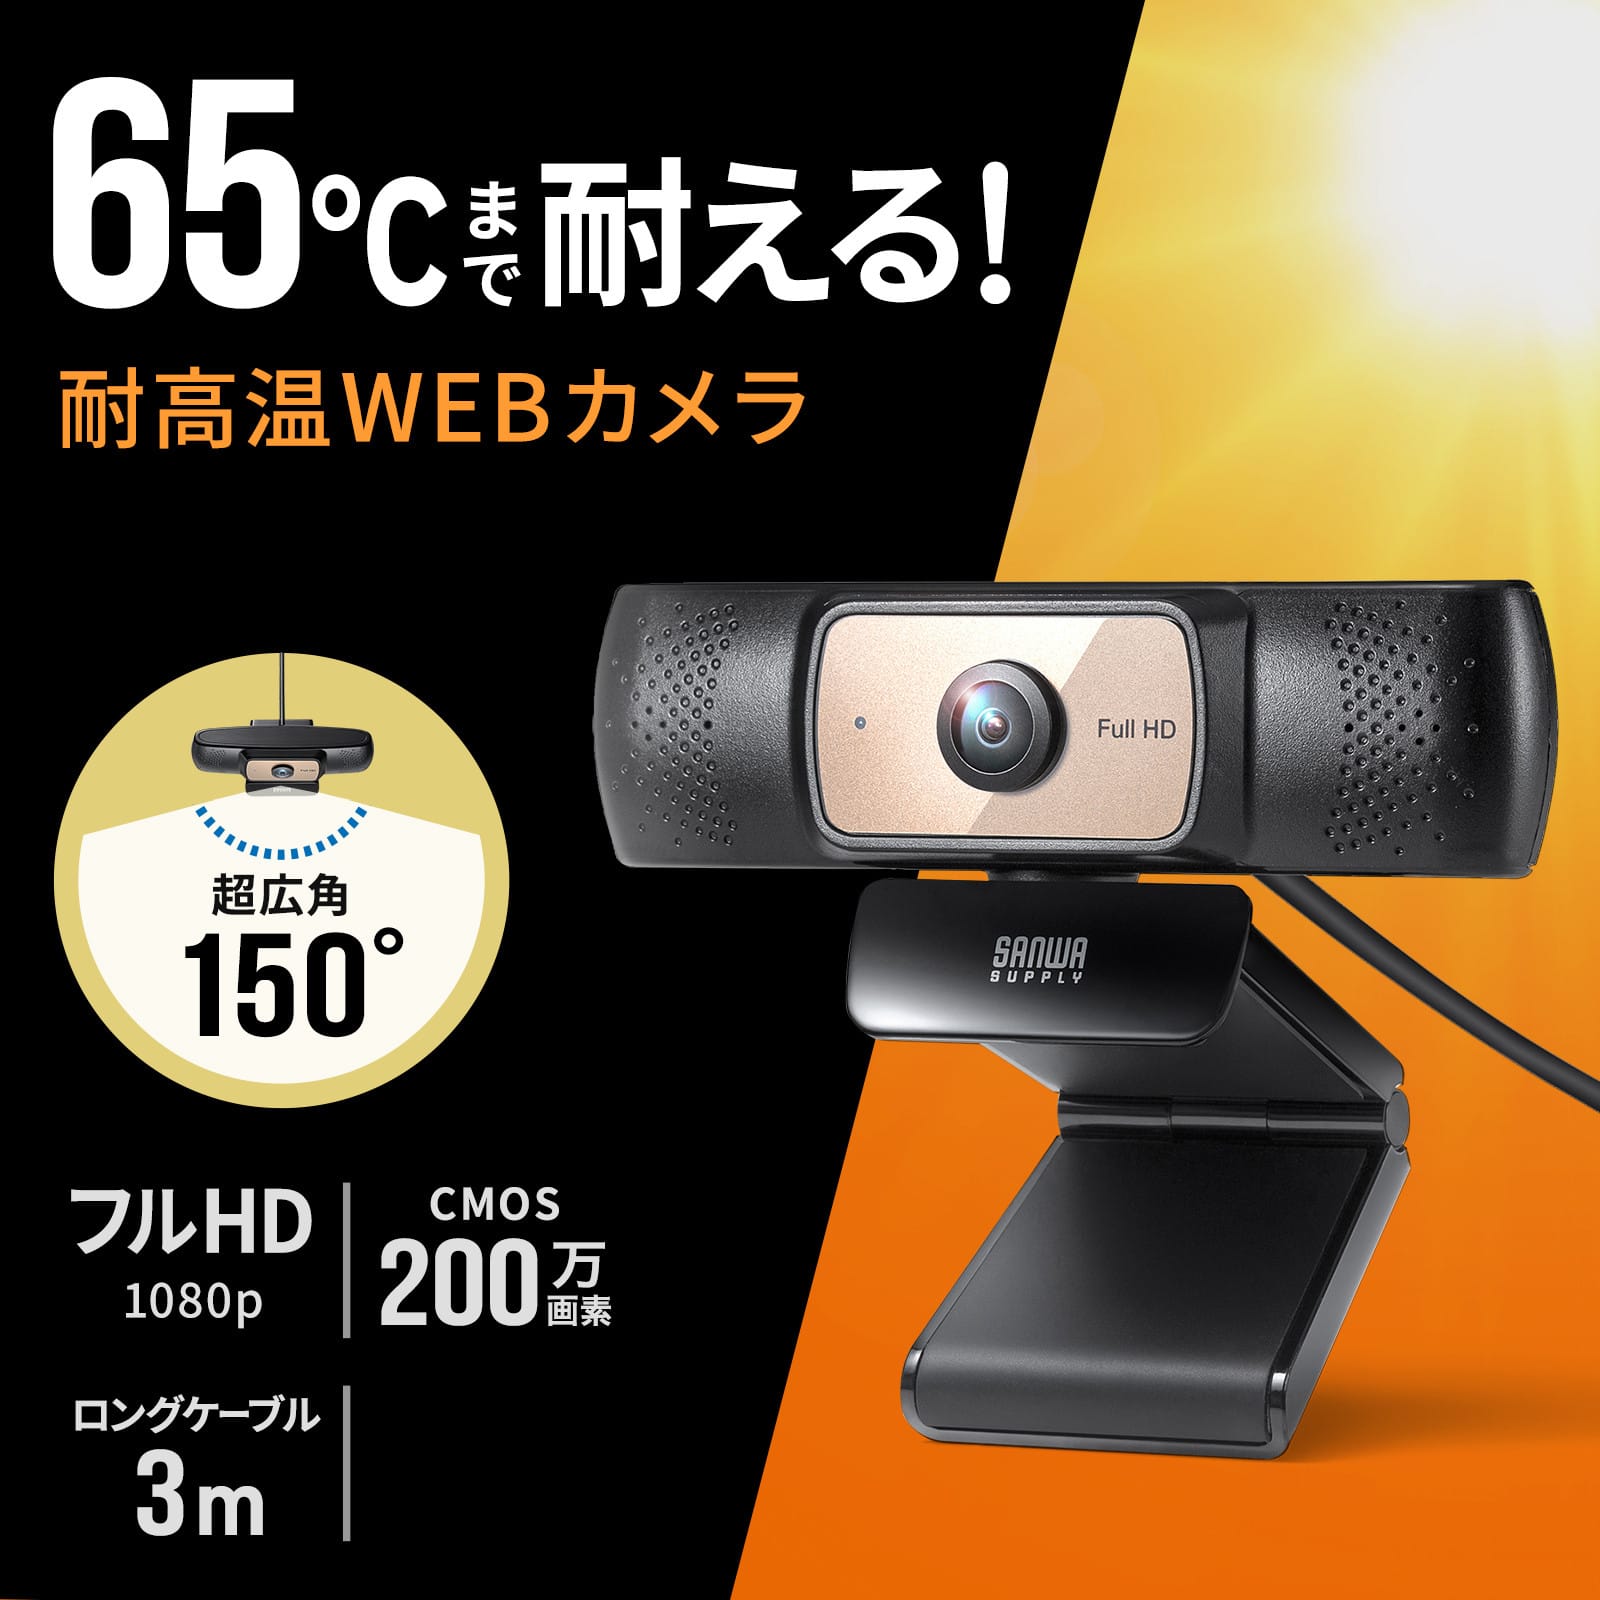 サンワサプライ、高温の環境下でも使用できるウェブカメラを発売